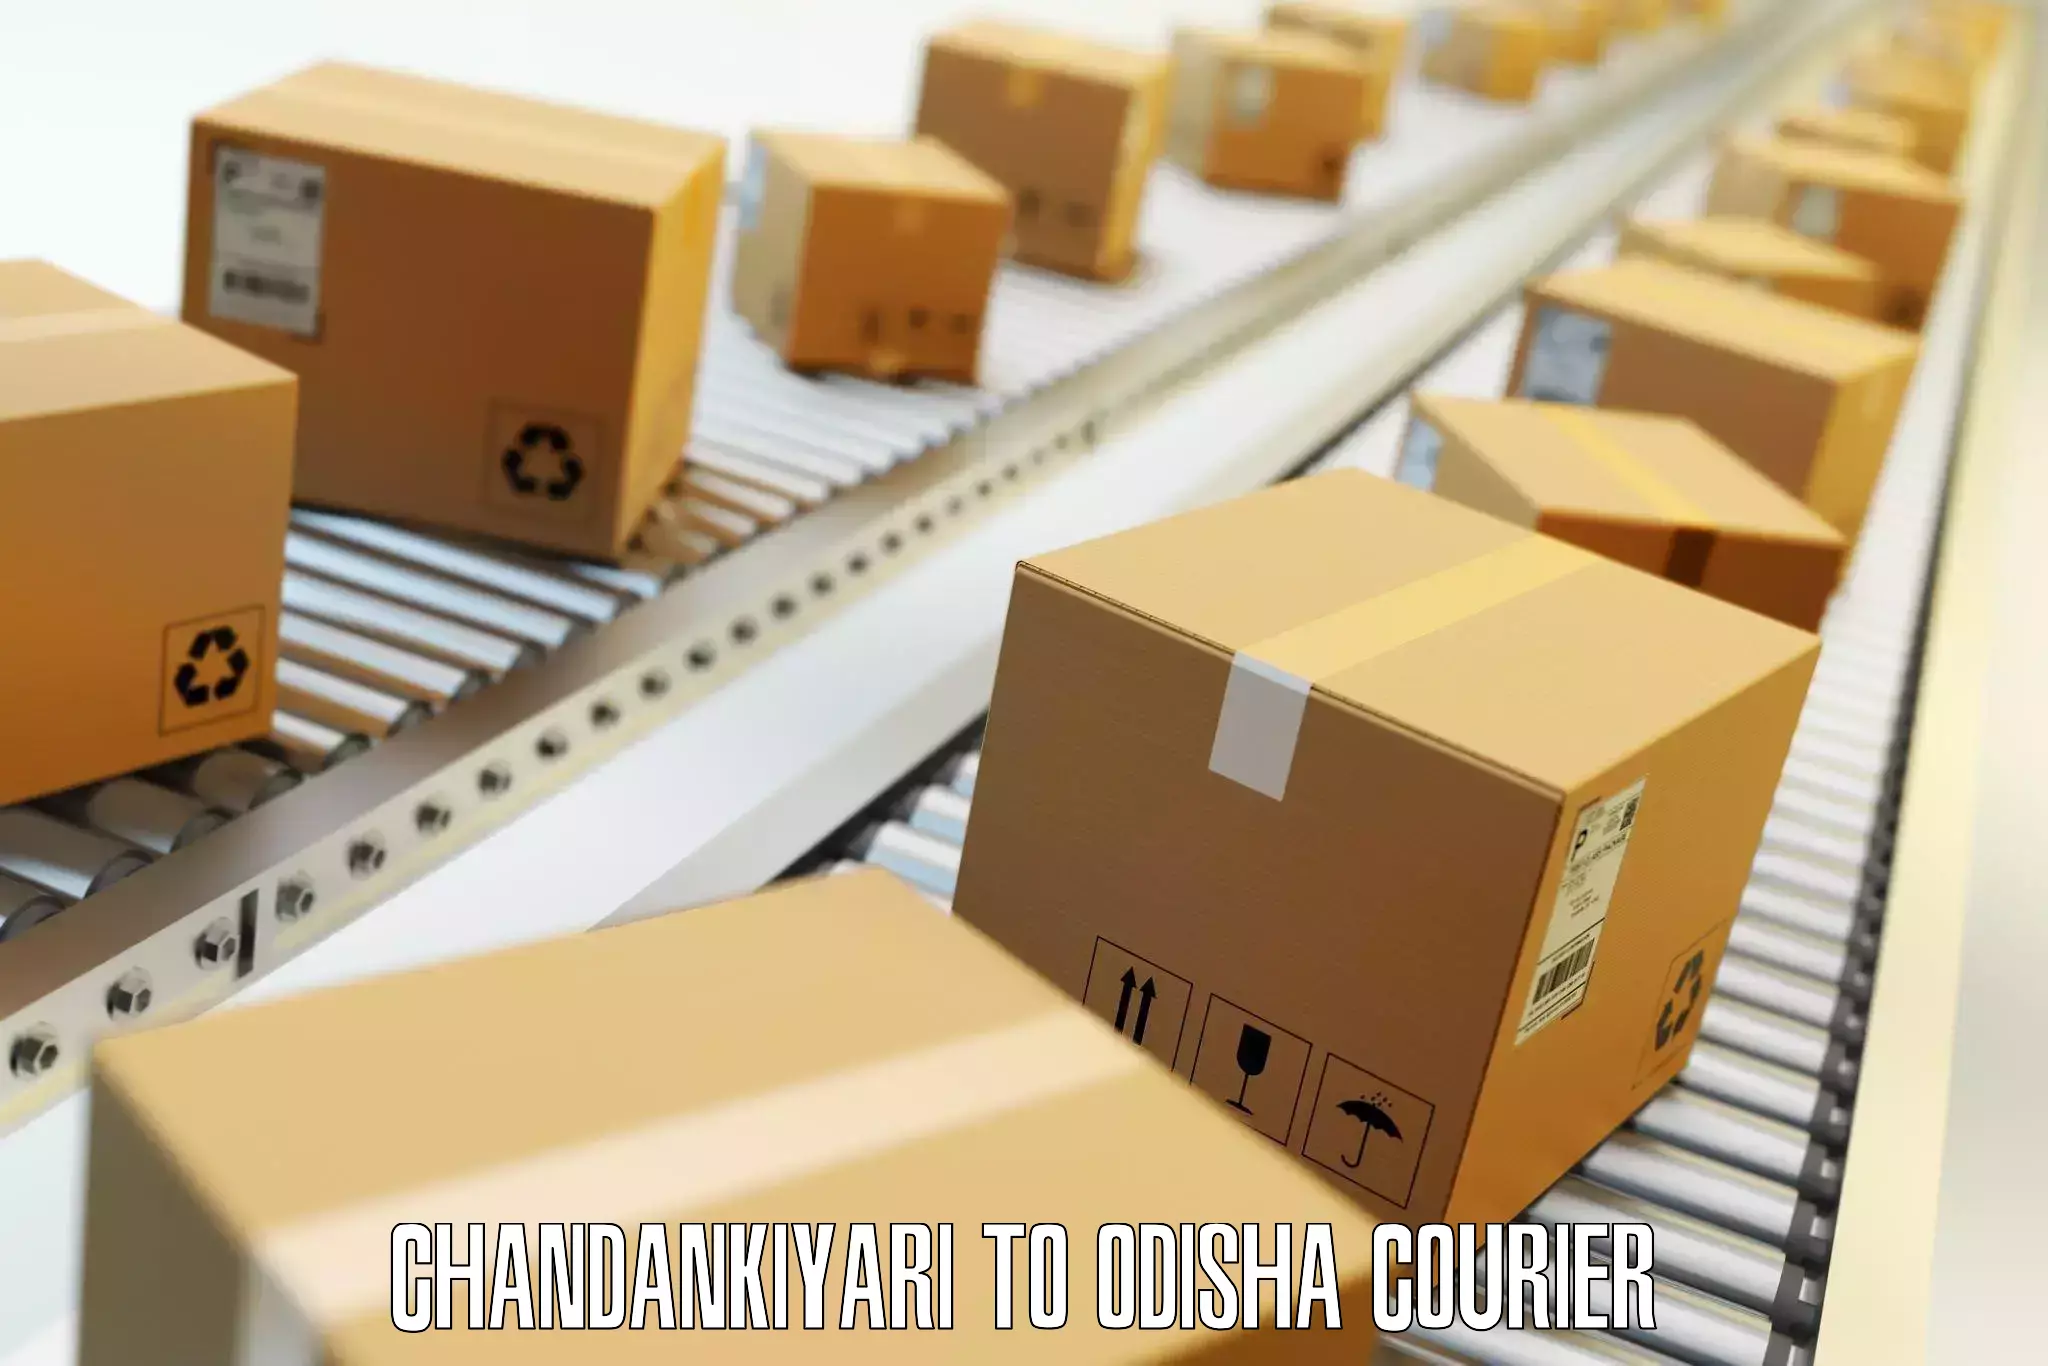 Luggage shipment logistics Chandankiyari to Tihidi